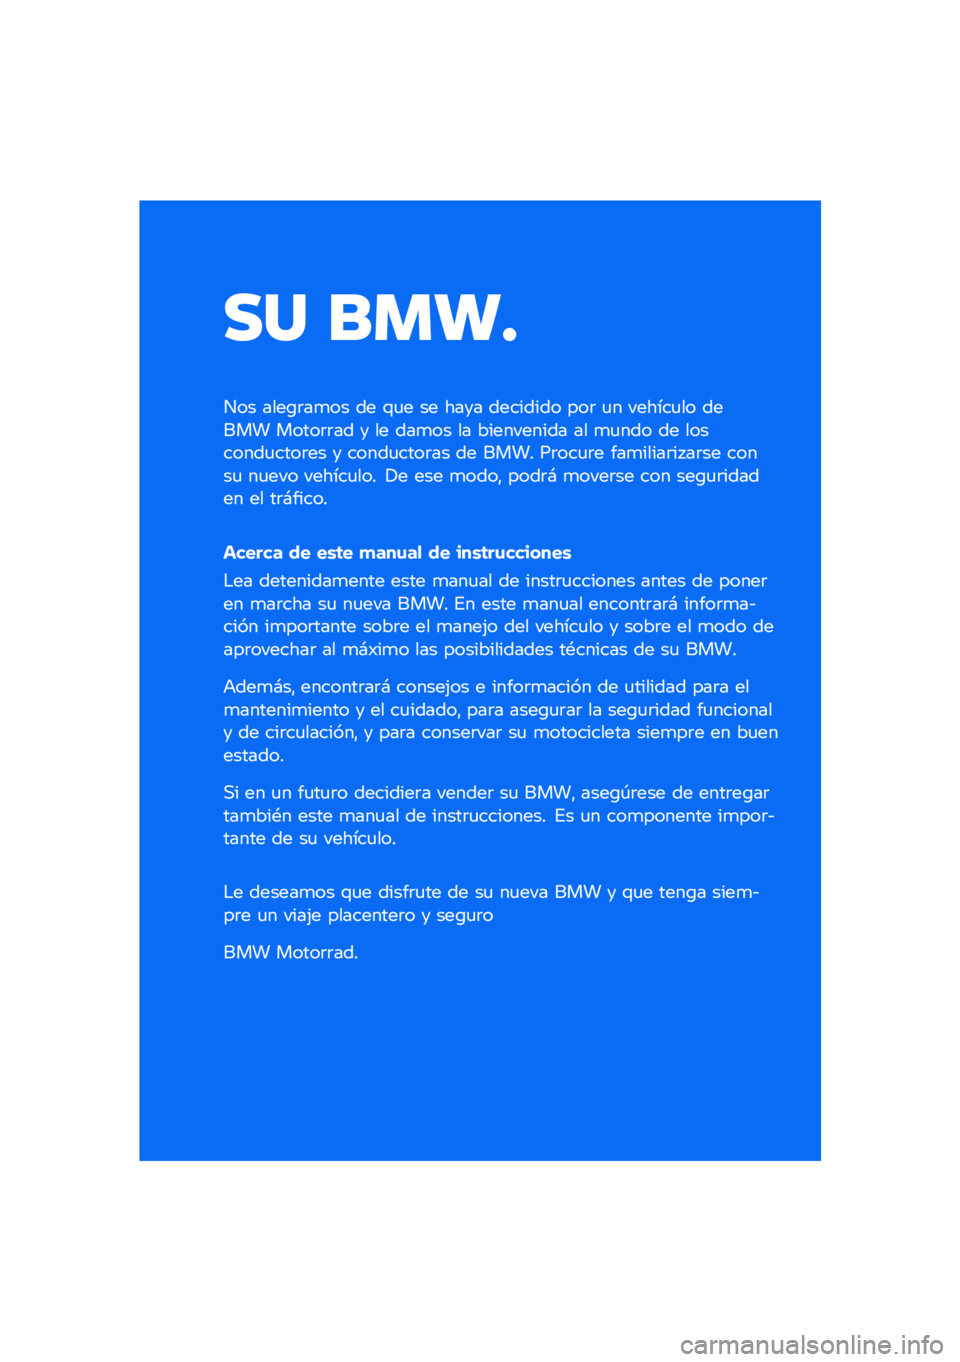 BMW MOTORRAD R NINE T 2020  Manual de instrucciones (in Spanish) �� ����
��� ����\b�	��
�� �� �\f�
� �� ���� �������� ���	 �
� ������
�� ����� �����	�	�� � �� ���
�� �� ���������� �� �
�
��